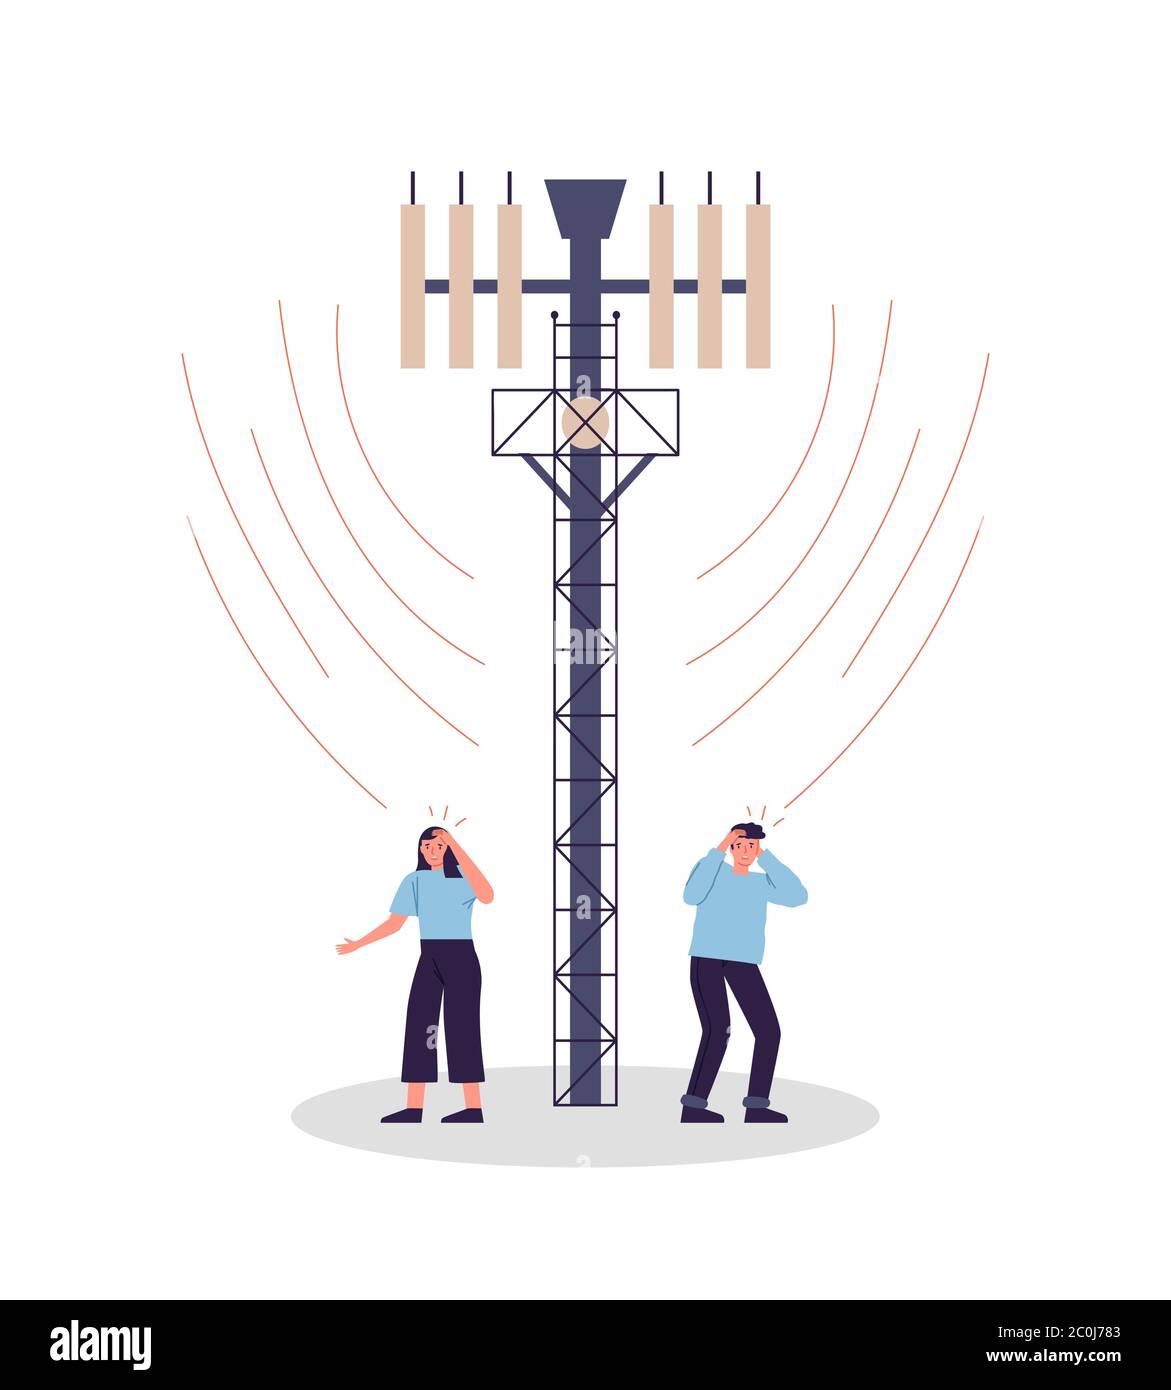 Gefährliche 5G Tower-Strahlung Abbildung auf isoliertem weißen Hintergrund für Gesundheitsrisiko-Konzept. Traurige Mann und Frau mit Kopfschmerz, schädliche mobile Daten Stock Vektor